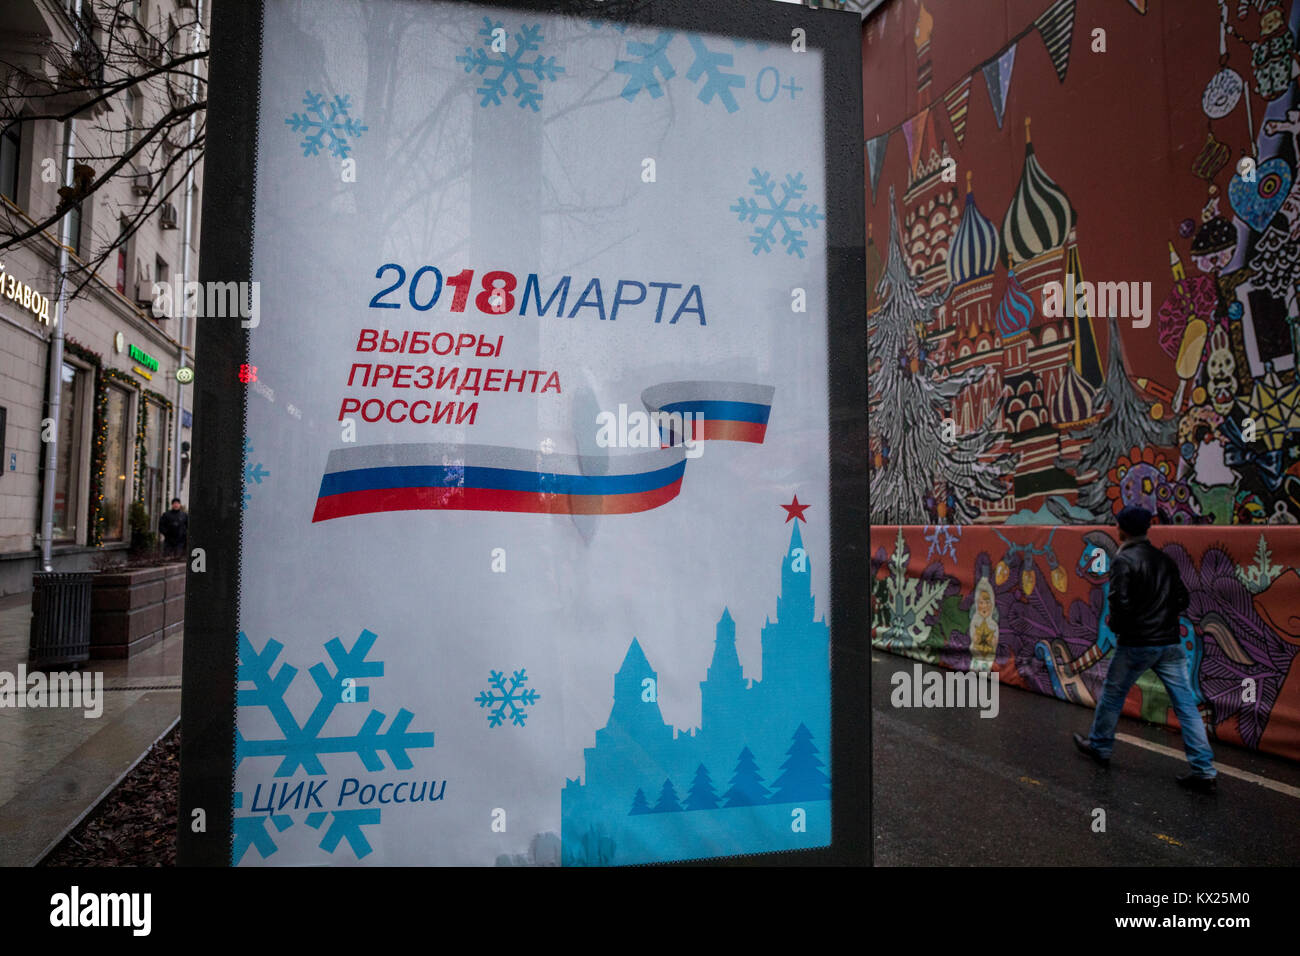 Un banner pubblicitario con la data delle elezioni presidenziali 2018 nella Federazione Russa è impostato sulla Tverskaya Street nel centro di Mosca, Russia Foto Stock